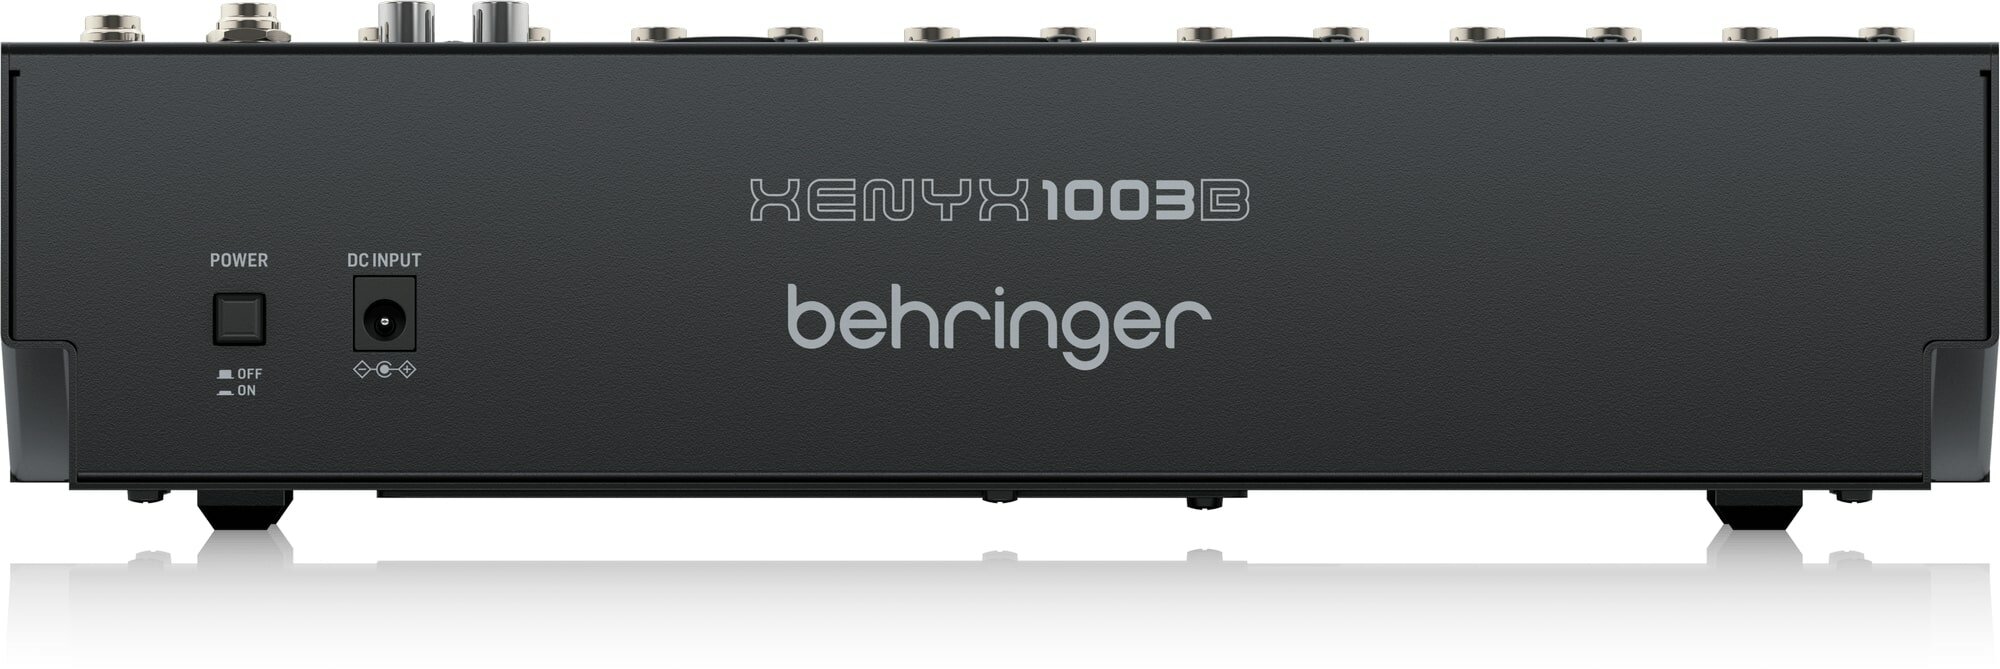 Микшерные пульты аналоговые Behringer XENYX 1003B